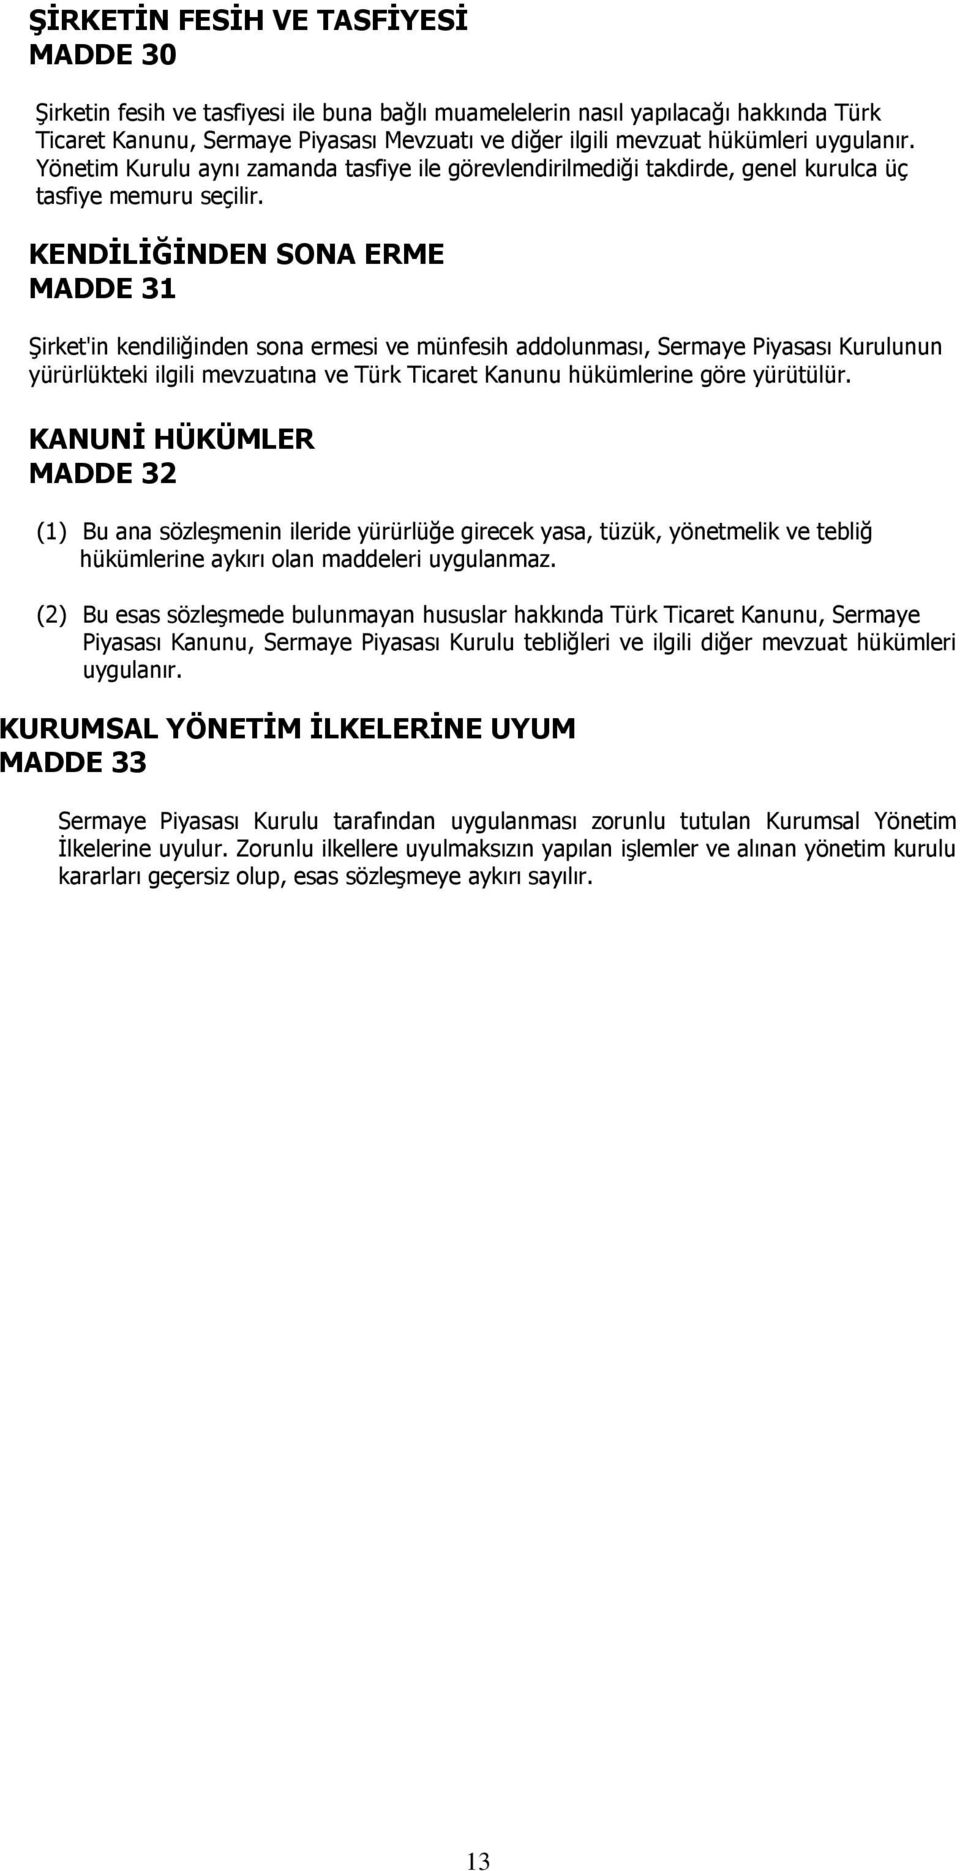 KENDİLİĞİNDEN SONA ERME MADDE 31 Şirket'in kendiliğinden sona ermesi ve münfesih addolunması, Sermaye Piyasası Kurulunun yürürlükteki ilgili mevzuatına ve Türk Ticaret Kanunu hükümlerine göre